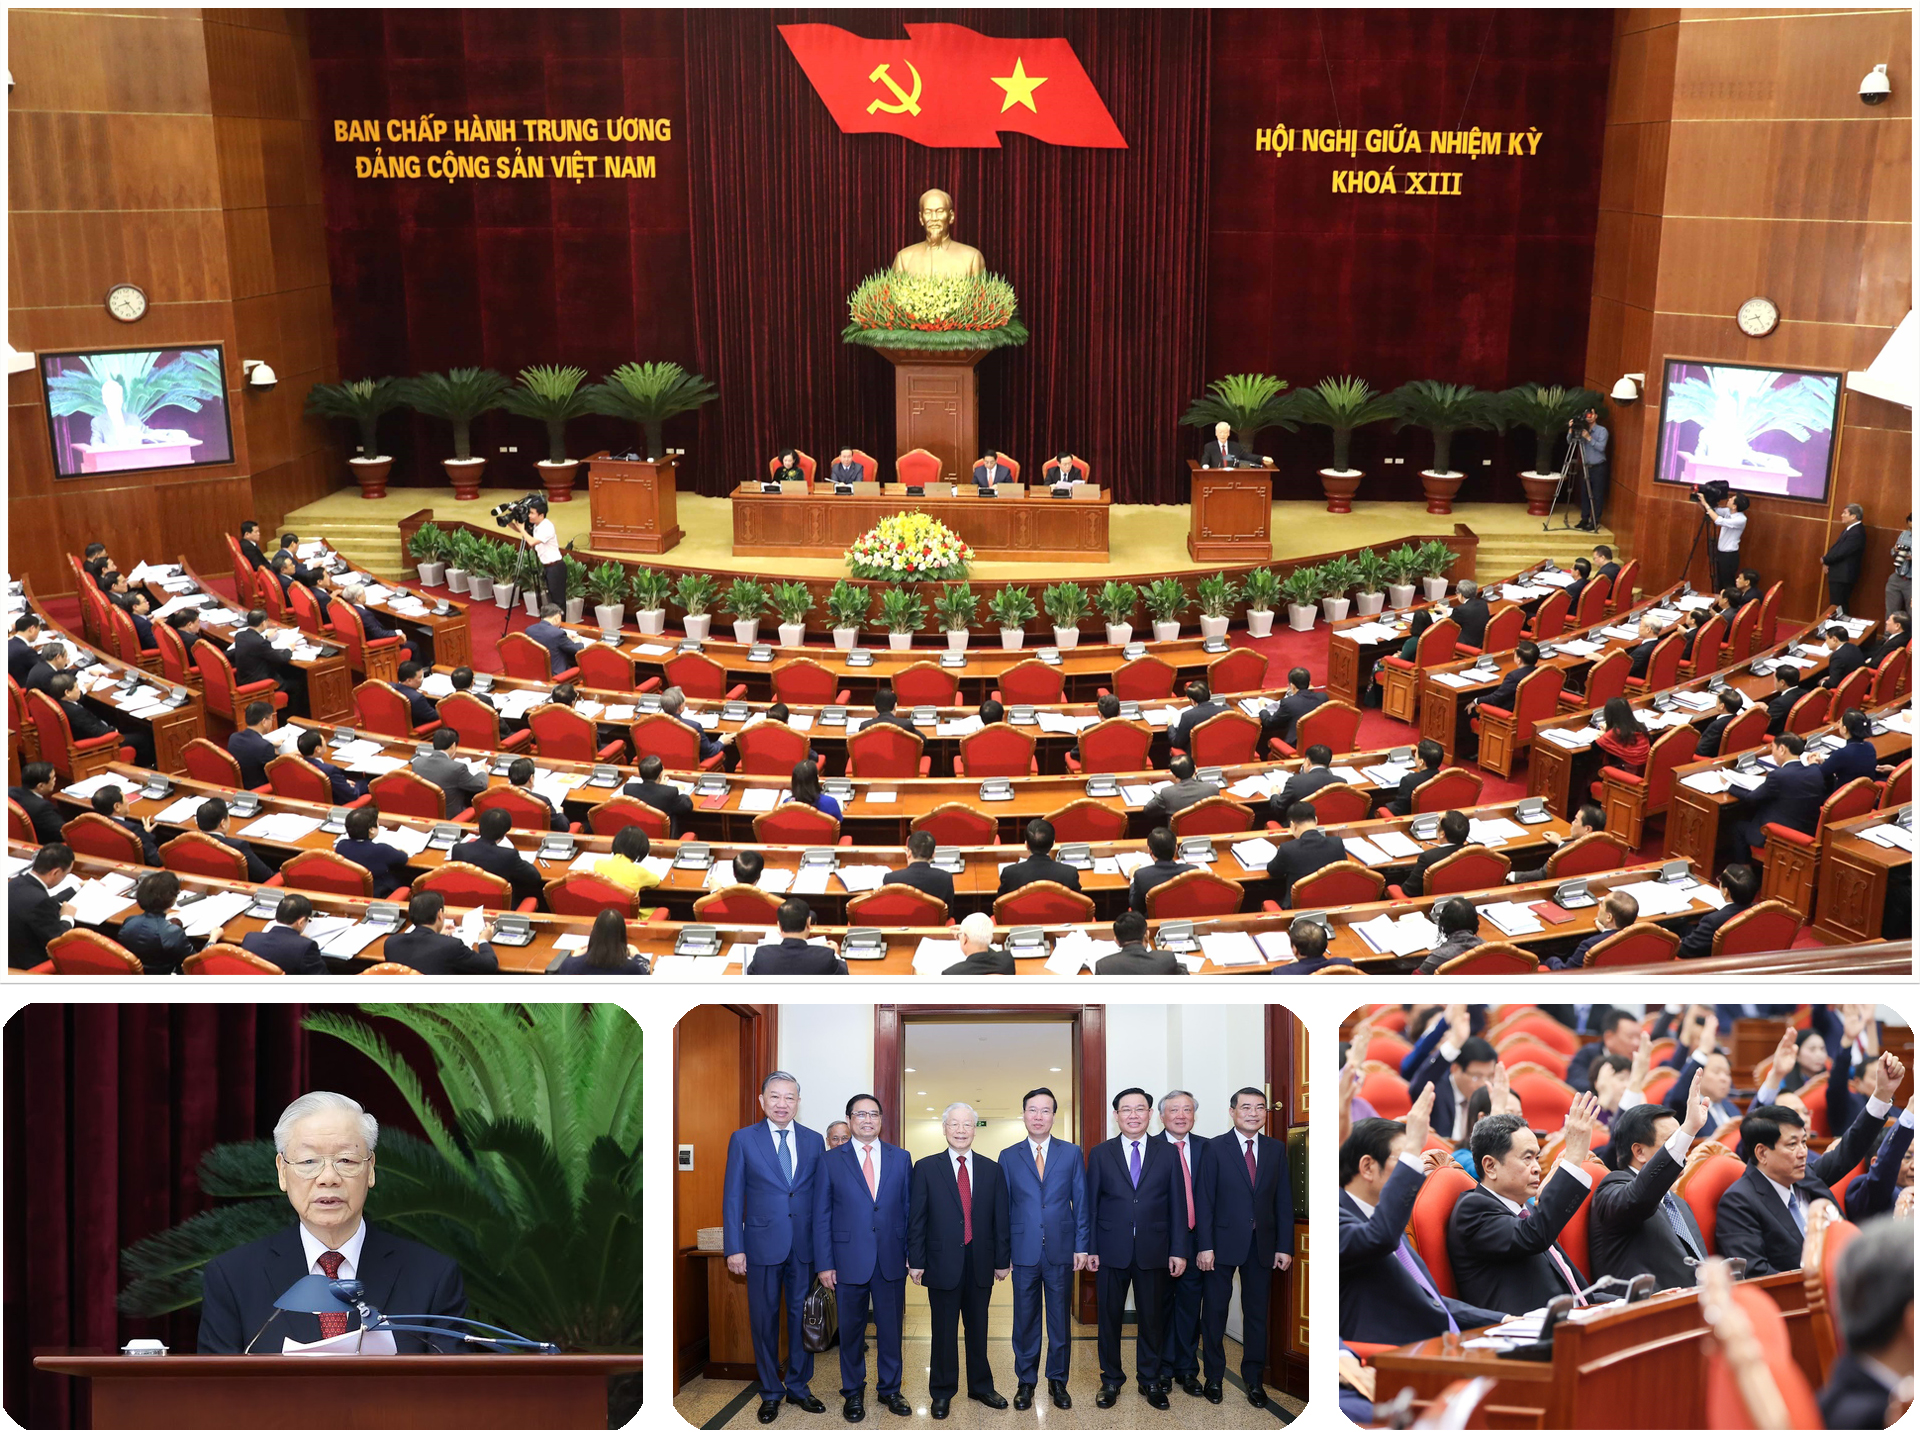 10 dấu ấn tiêu biểu của Việt Nam năm 2023